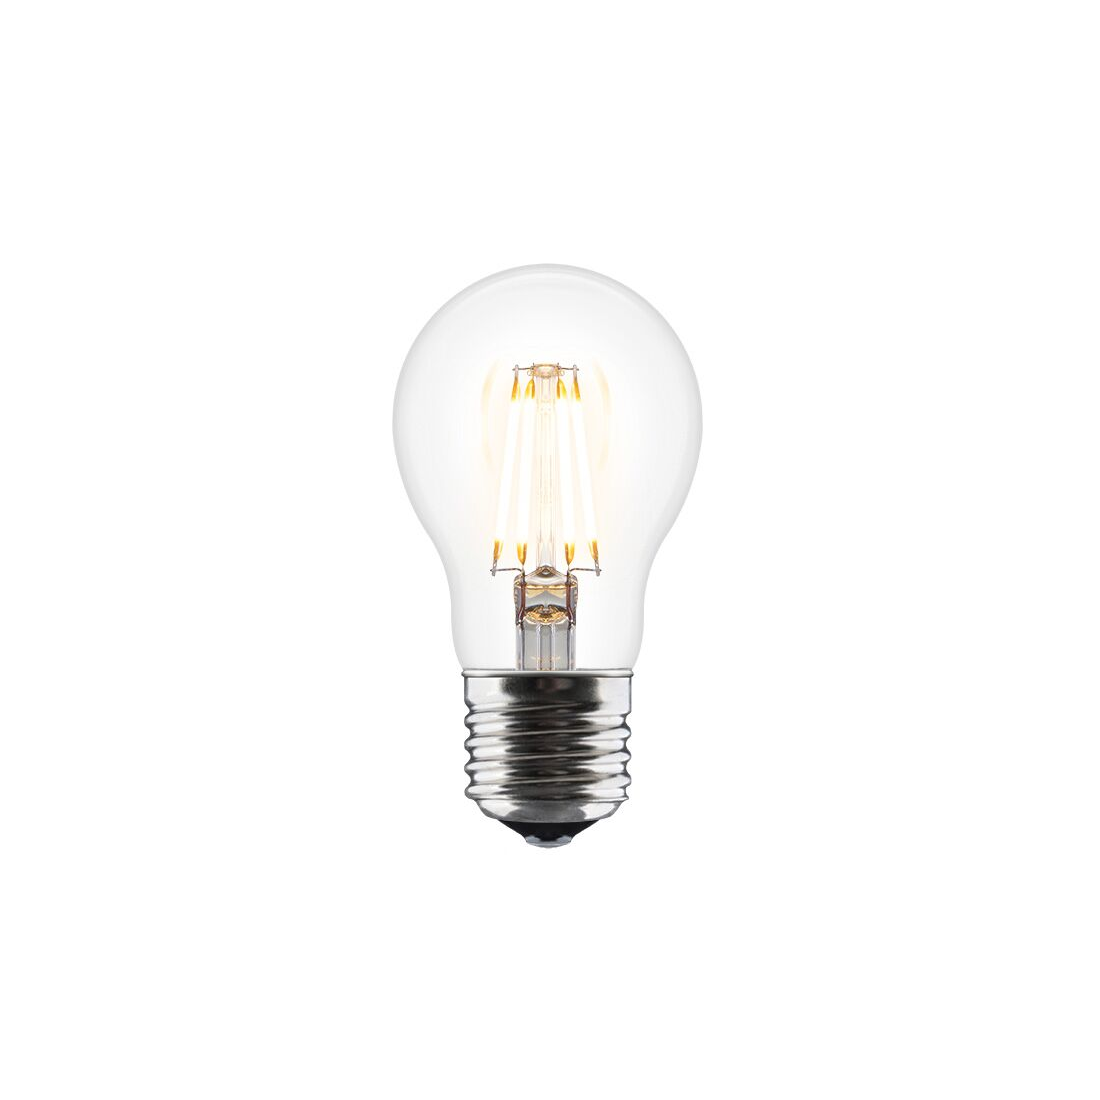 LED A++ lågenergi LED lampa Idea Umage